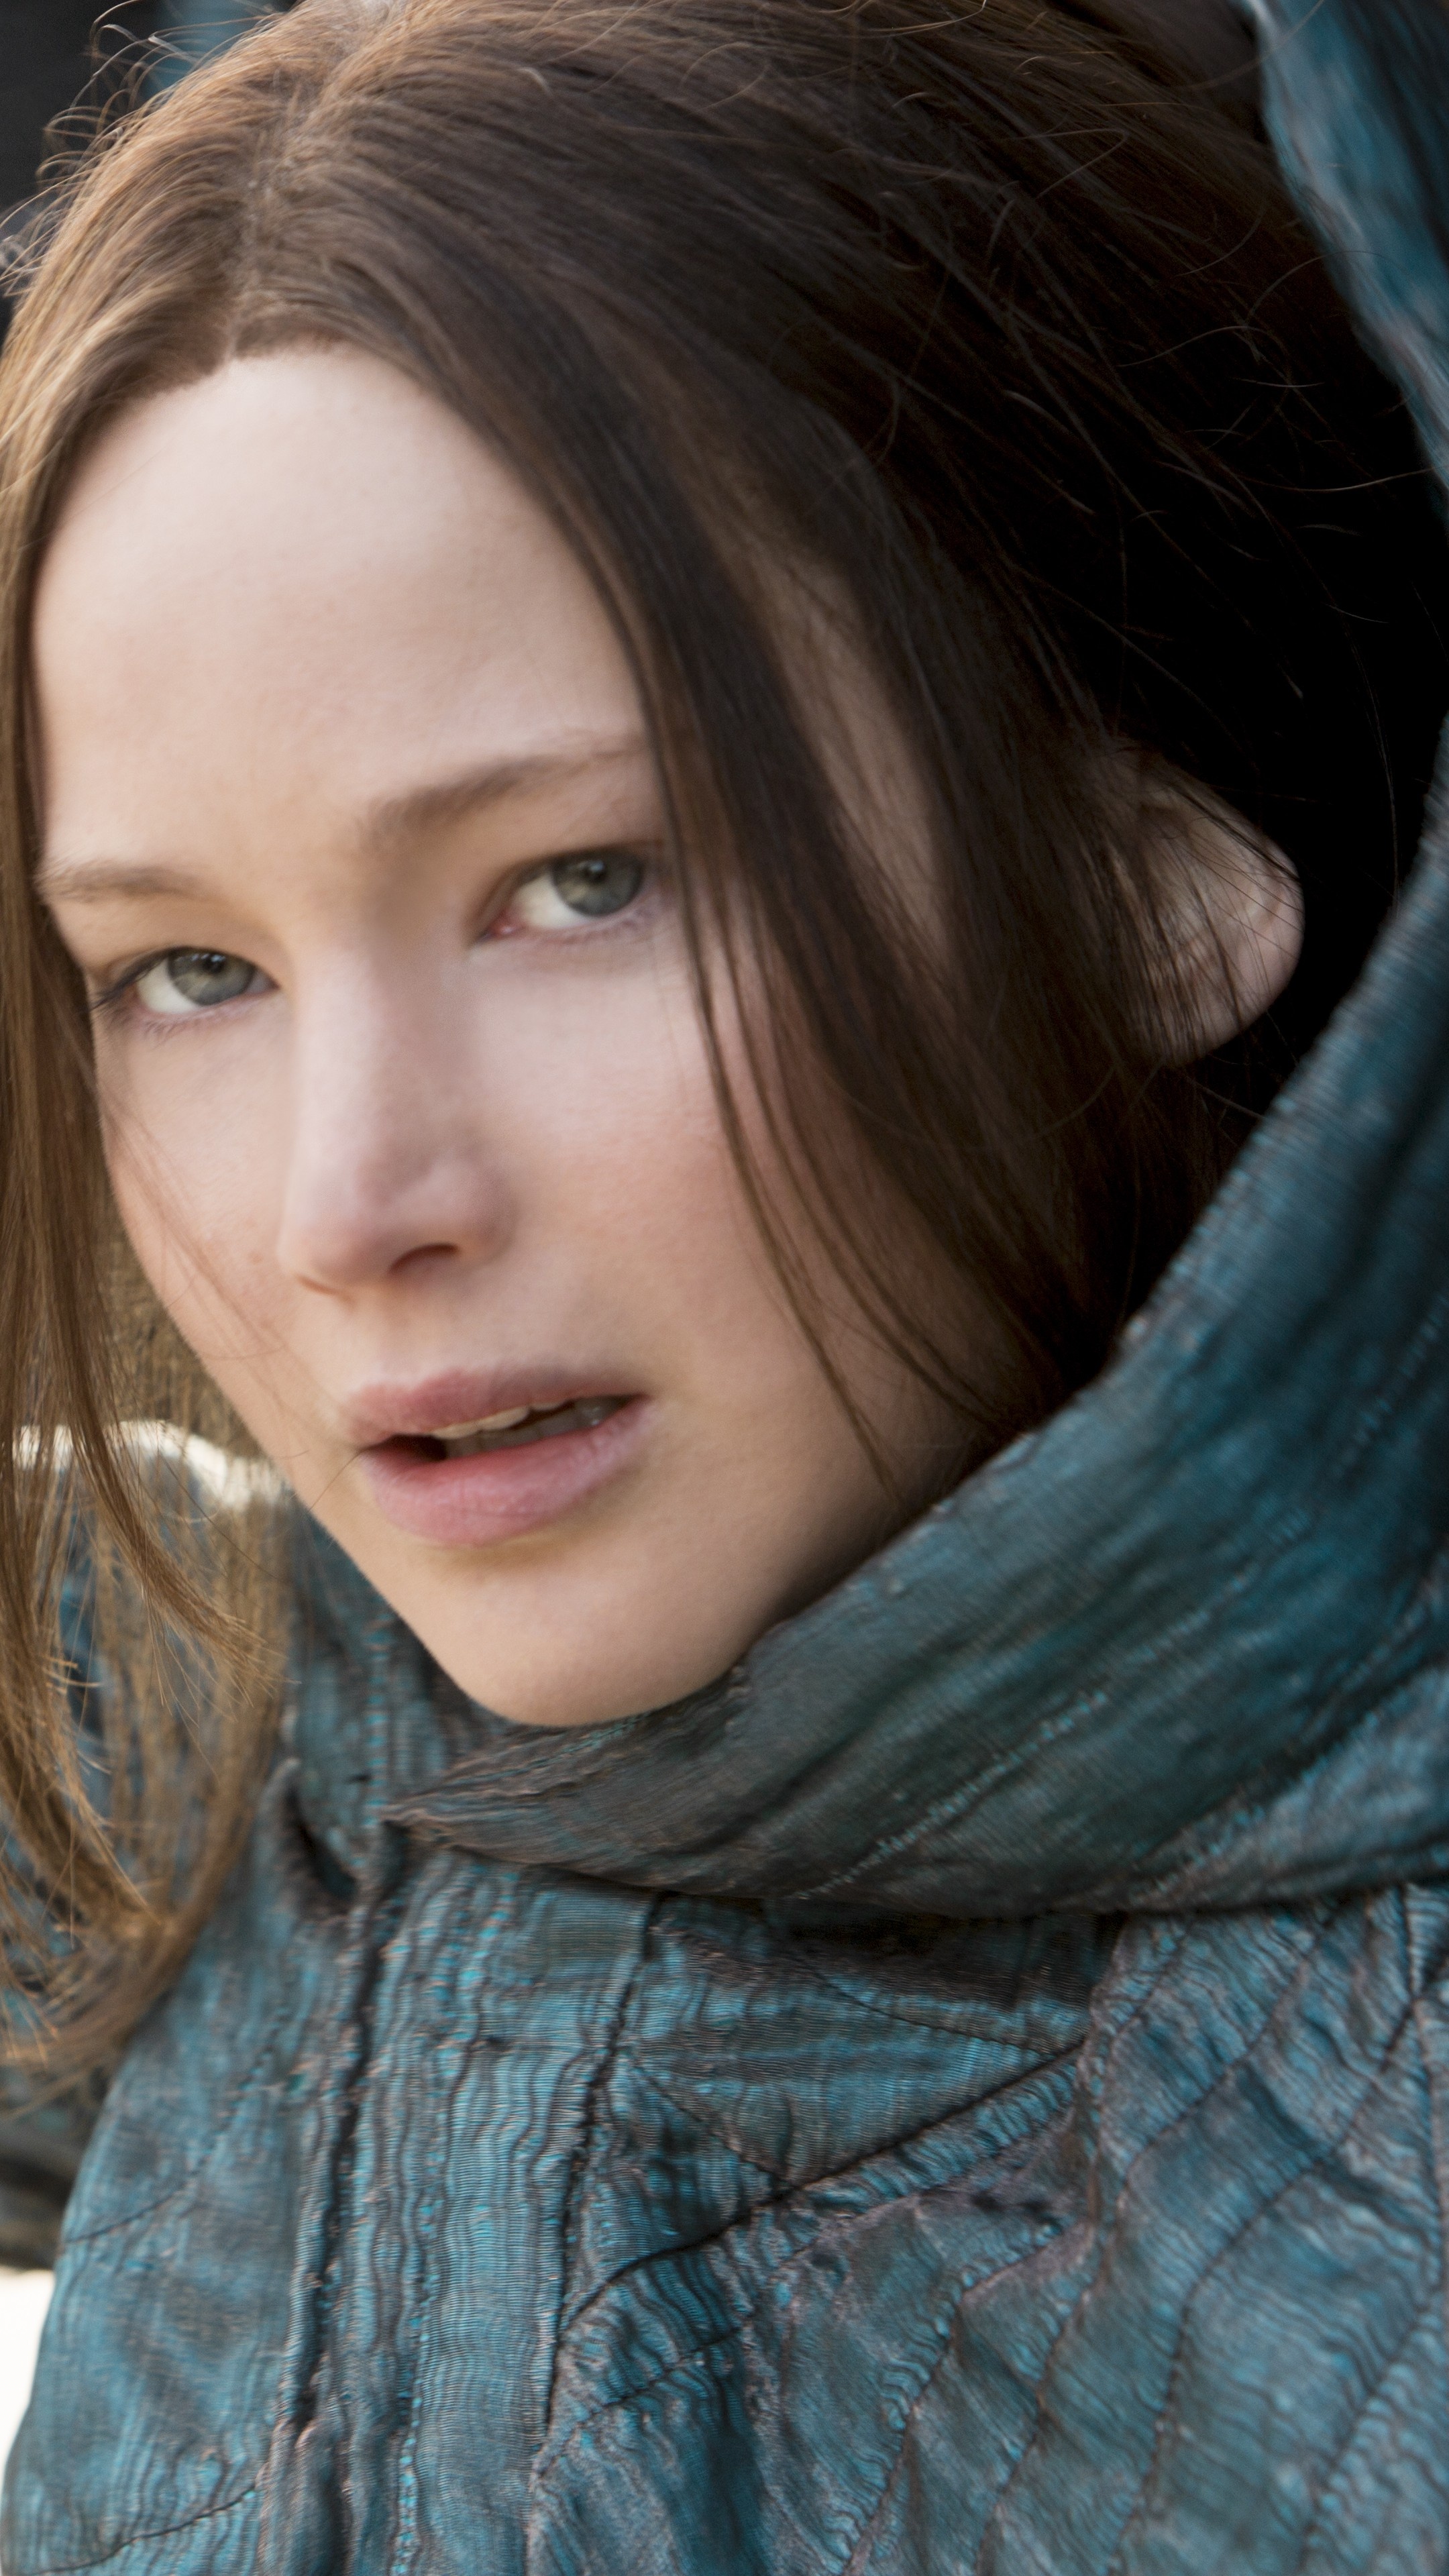 Hunger Games: Mockingjay - Part 2, Jennifer Lawrence as Katniss Everdeen. 2160x3840 4K Wallpaper.